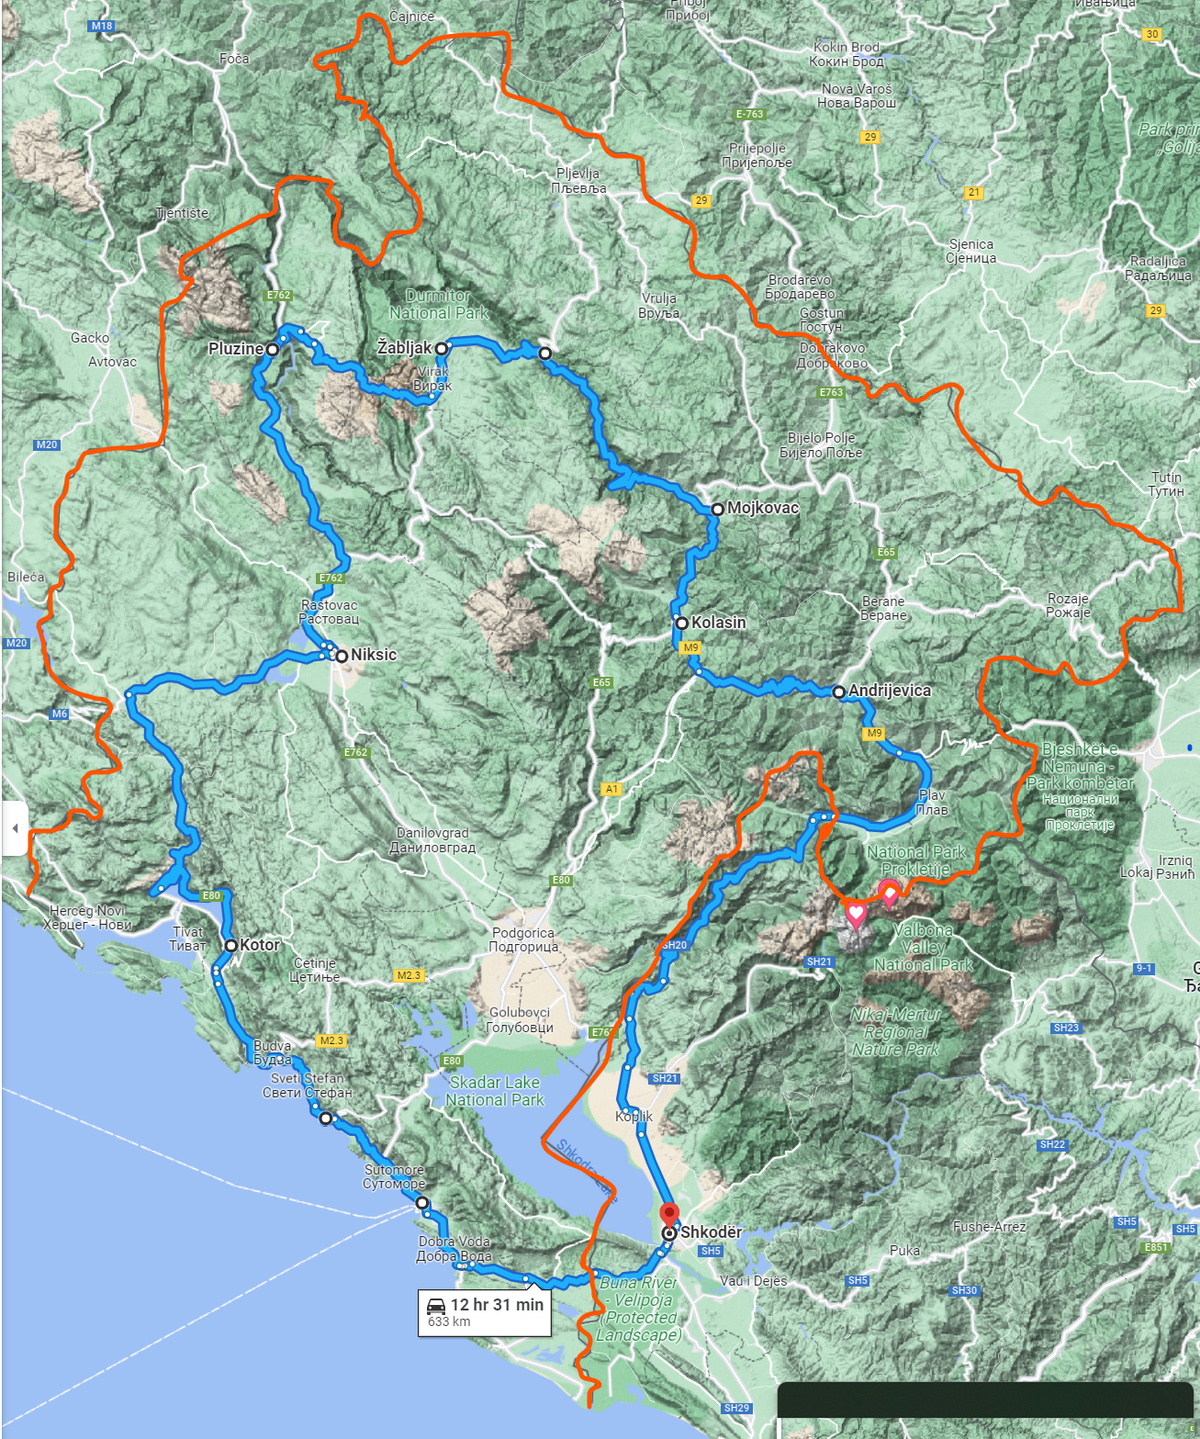 Läbitud kohad: Shkodër - Andrijevica - Kolašin - Tara kanjoni vaatepunkt - Žabljak - Durmitori rahvuspark - Prevoj Sedlo kuru - Plužine - Nikšić - Kotor - Shkodër. Oranžiga on pildil märgitud Montenegro riigipiir.